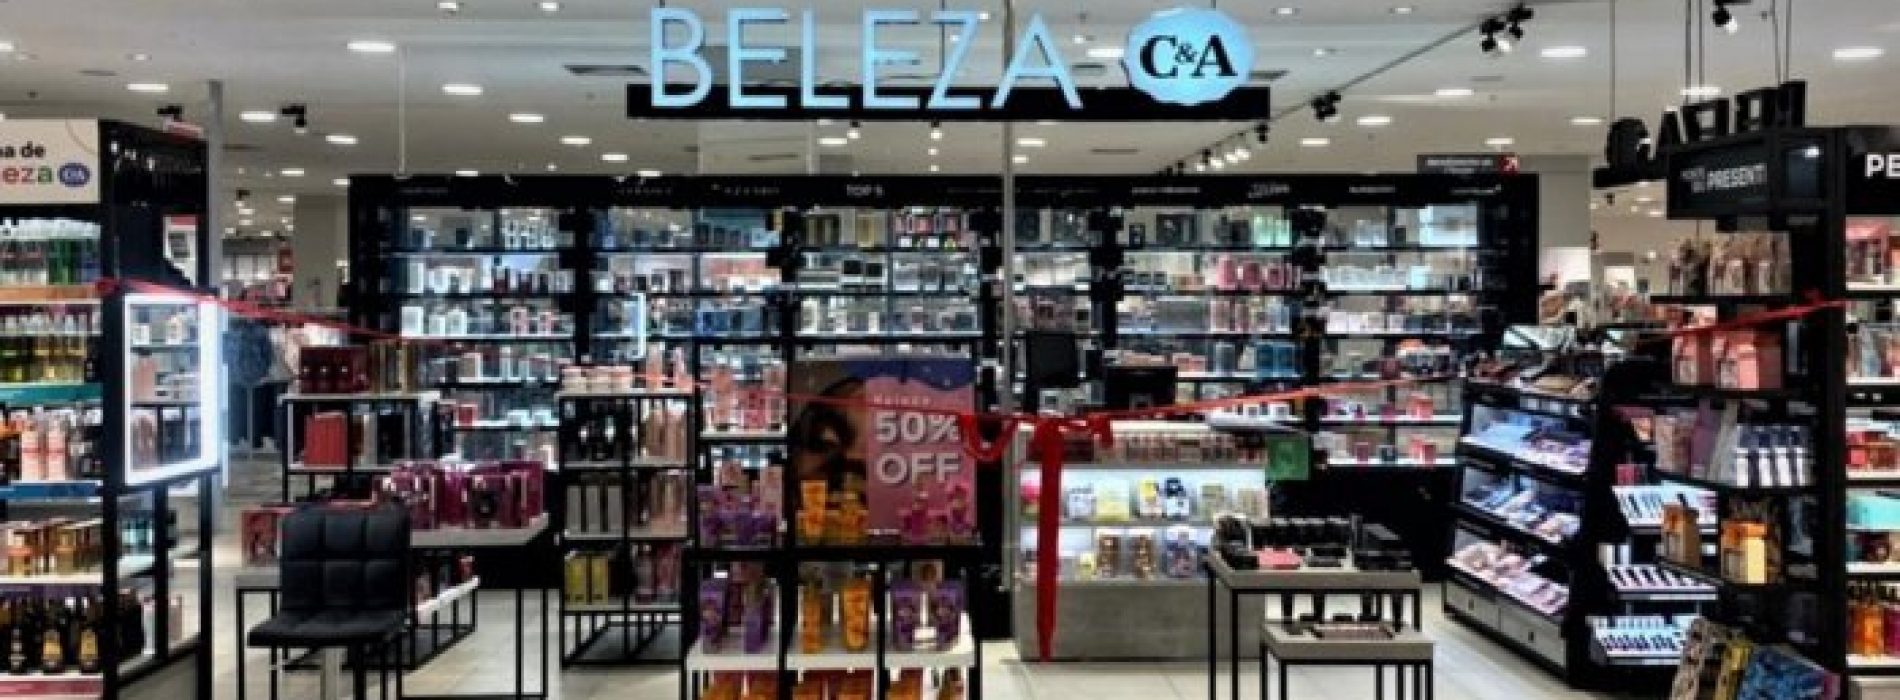 C&A Brasil lança marca de cosméticos e expande áreas de beleza em sua rede